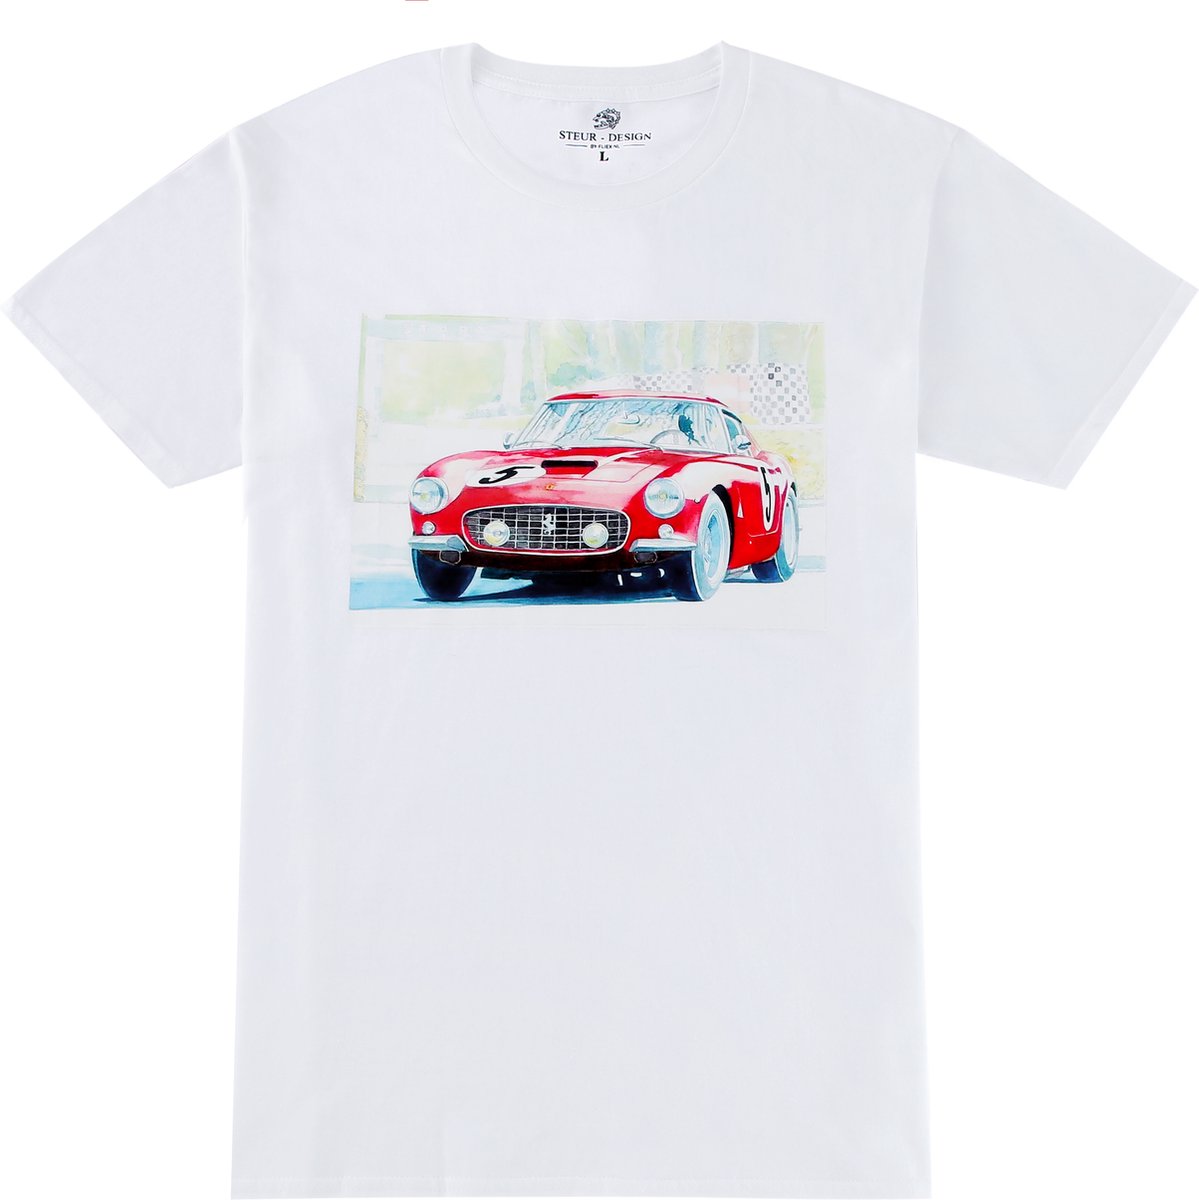 STEUR - DESIGN - T-shirt - wit - katoen - klassieke Ferrari - S